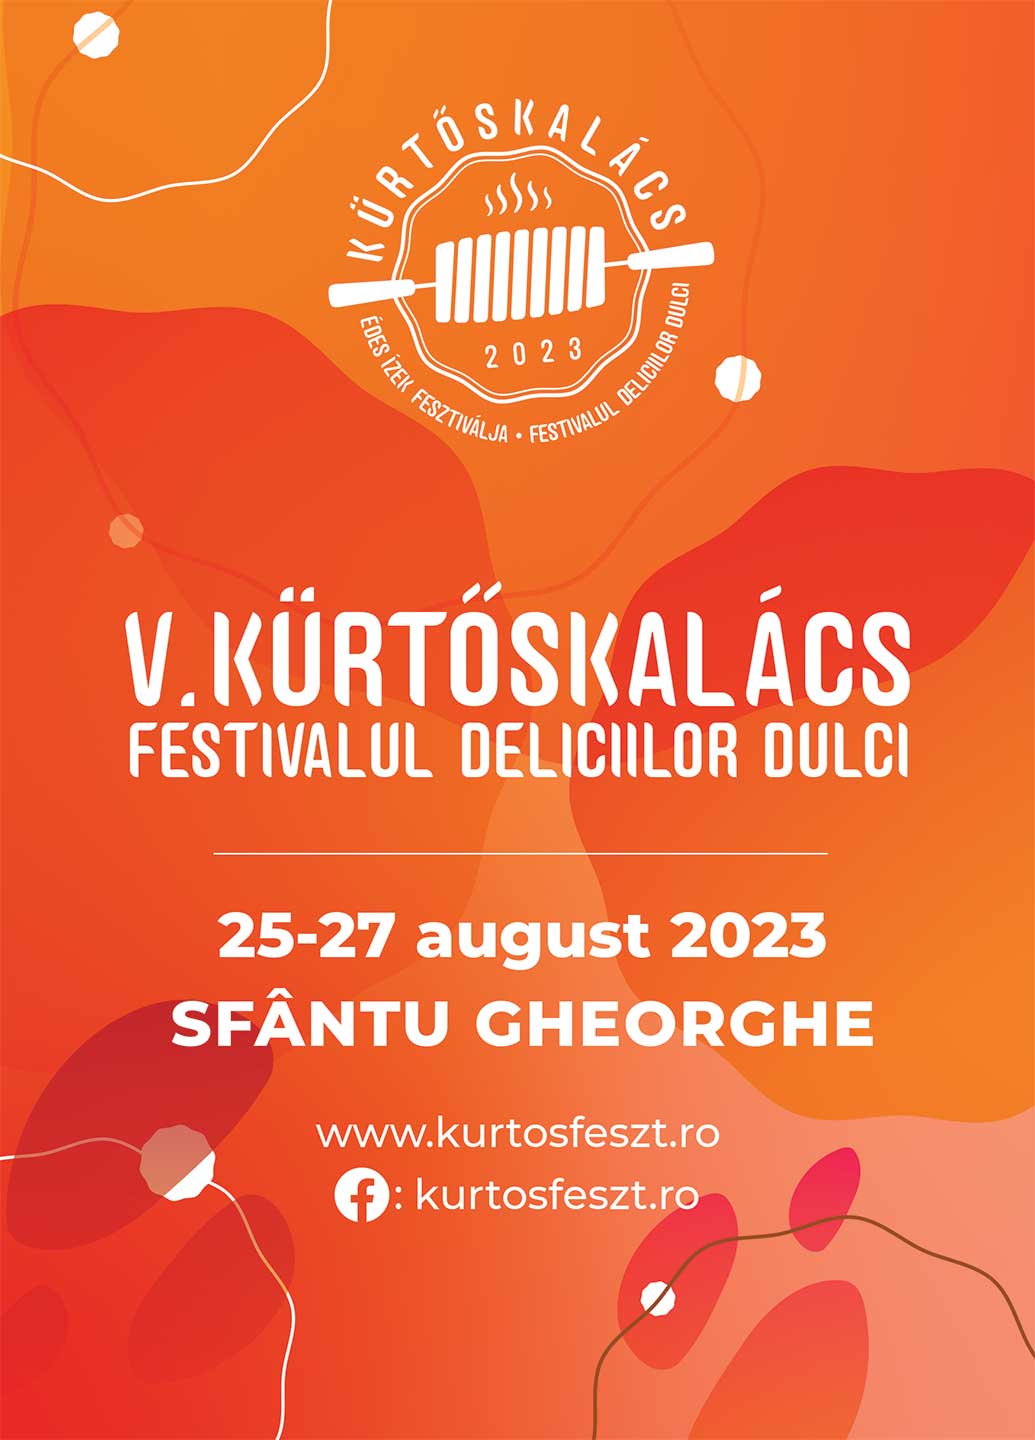 Kürtőskalács – Festivalul Deliciilor Dulci 2023